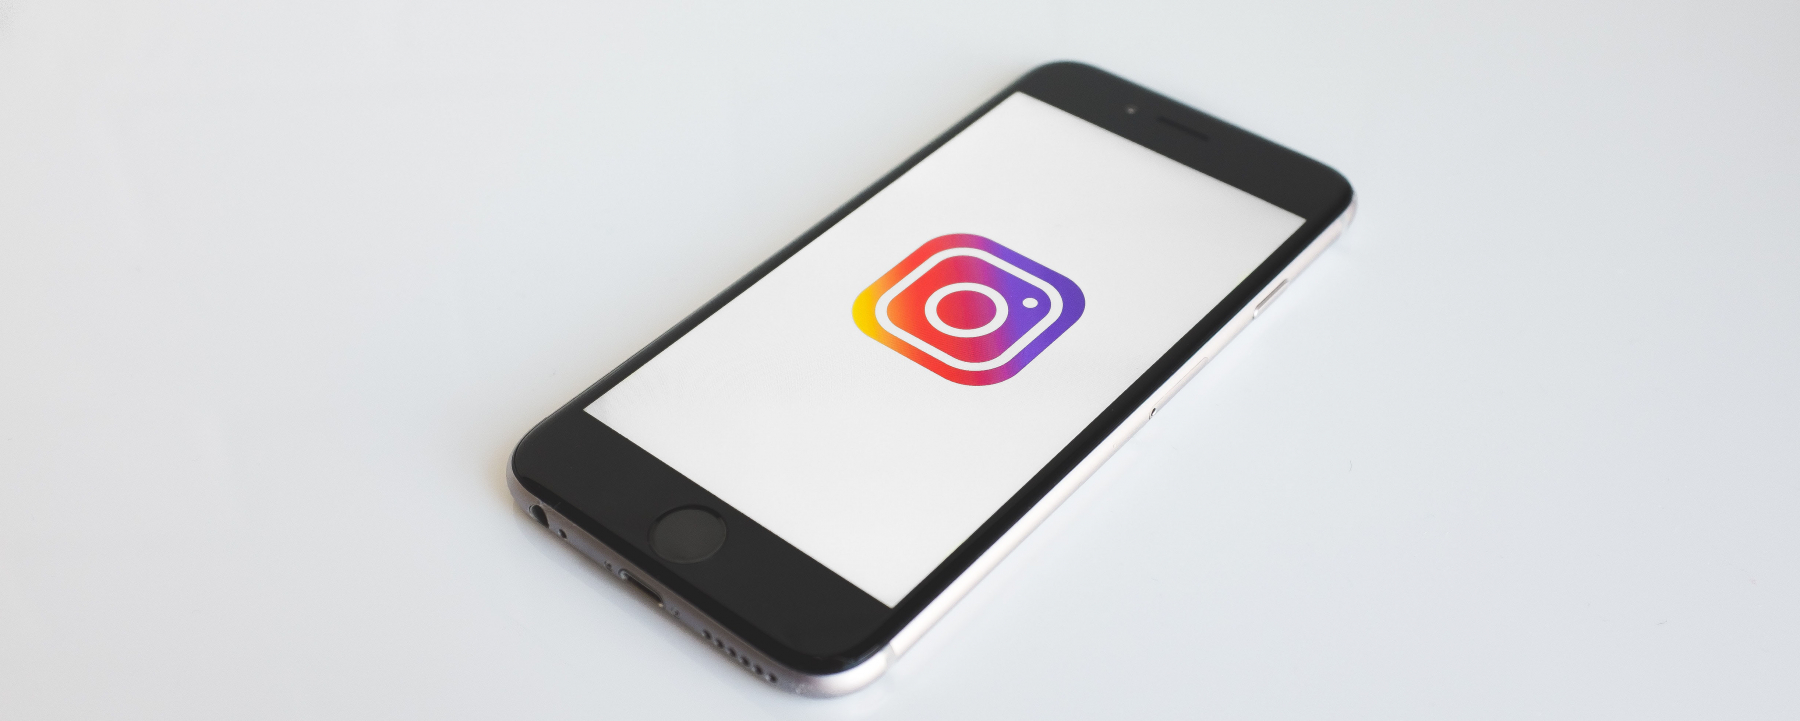 Webinar Instagram : comment gagner, engager et convertir vos abonnés ?, le 15 avril 2020, organisé par Neocamino et Réussir en FR 